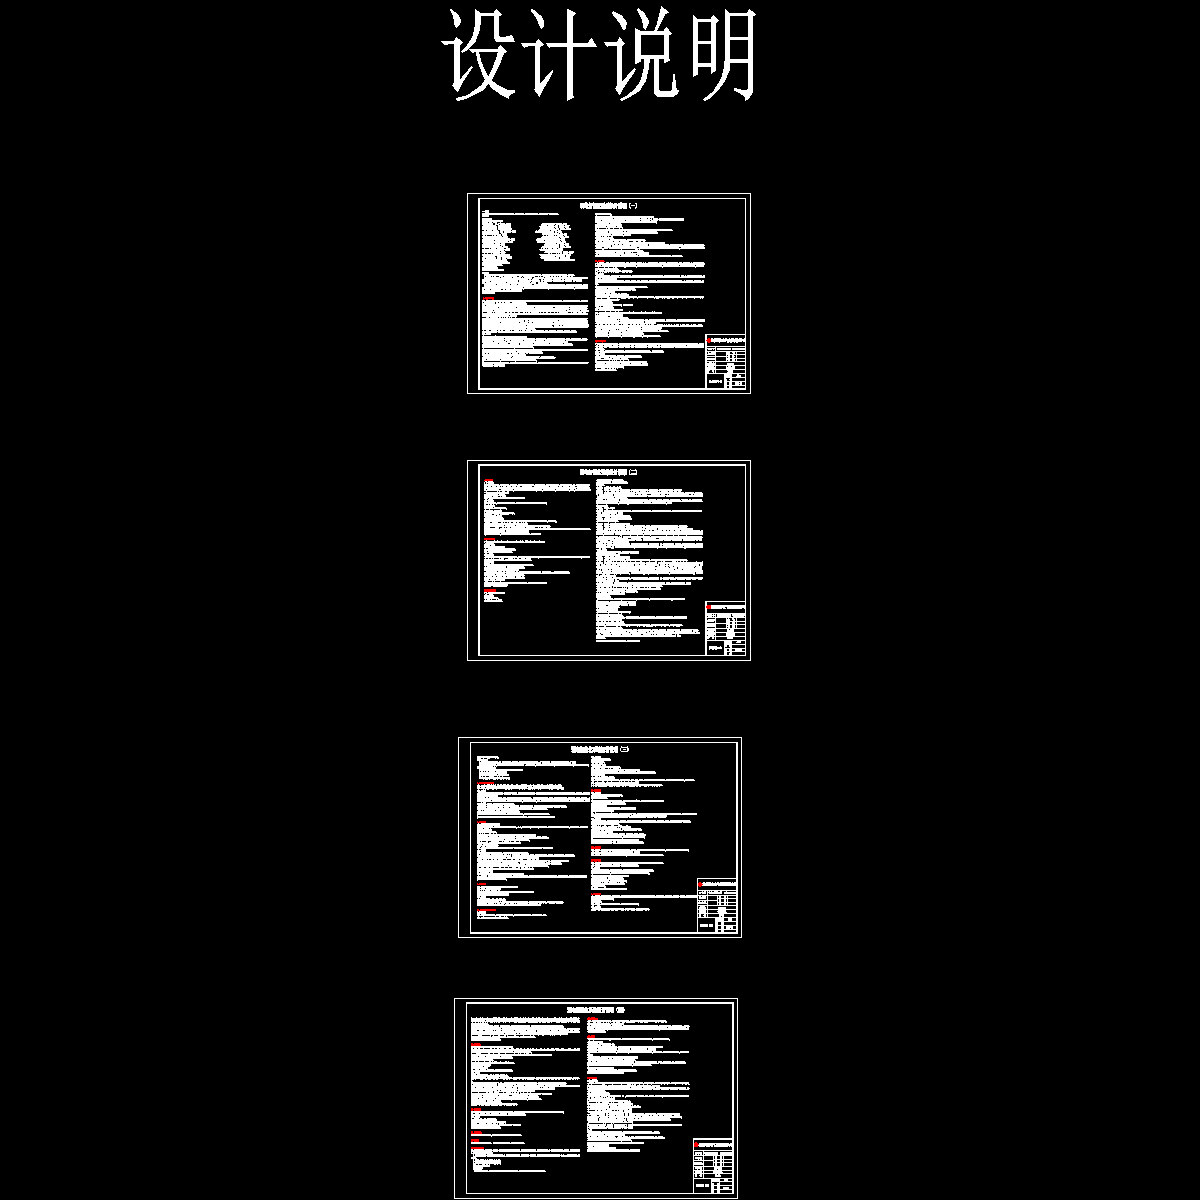 鹤壁万达广场弱电智能化方案图设计说明（2016.07.30)_t3.dwg